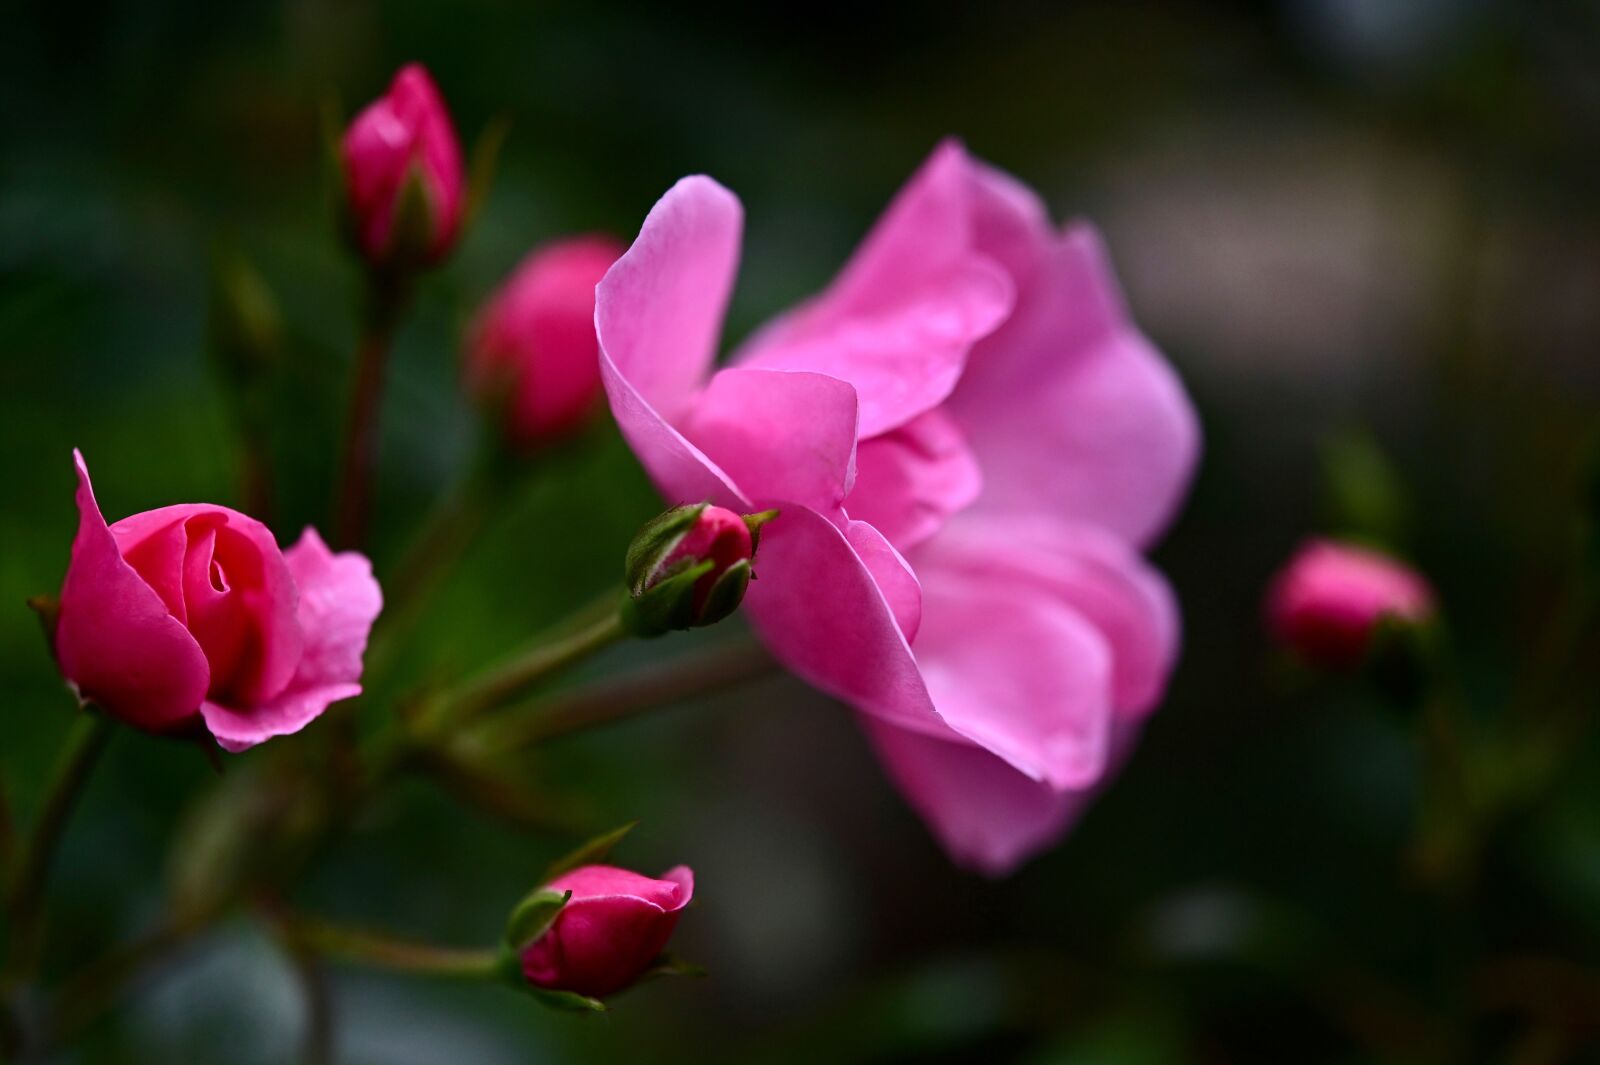 Nikon Z6 sample photo. Rose, pink, rose bloom photography